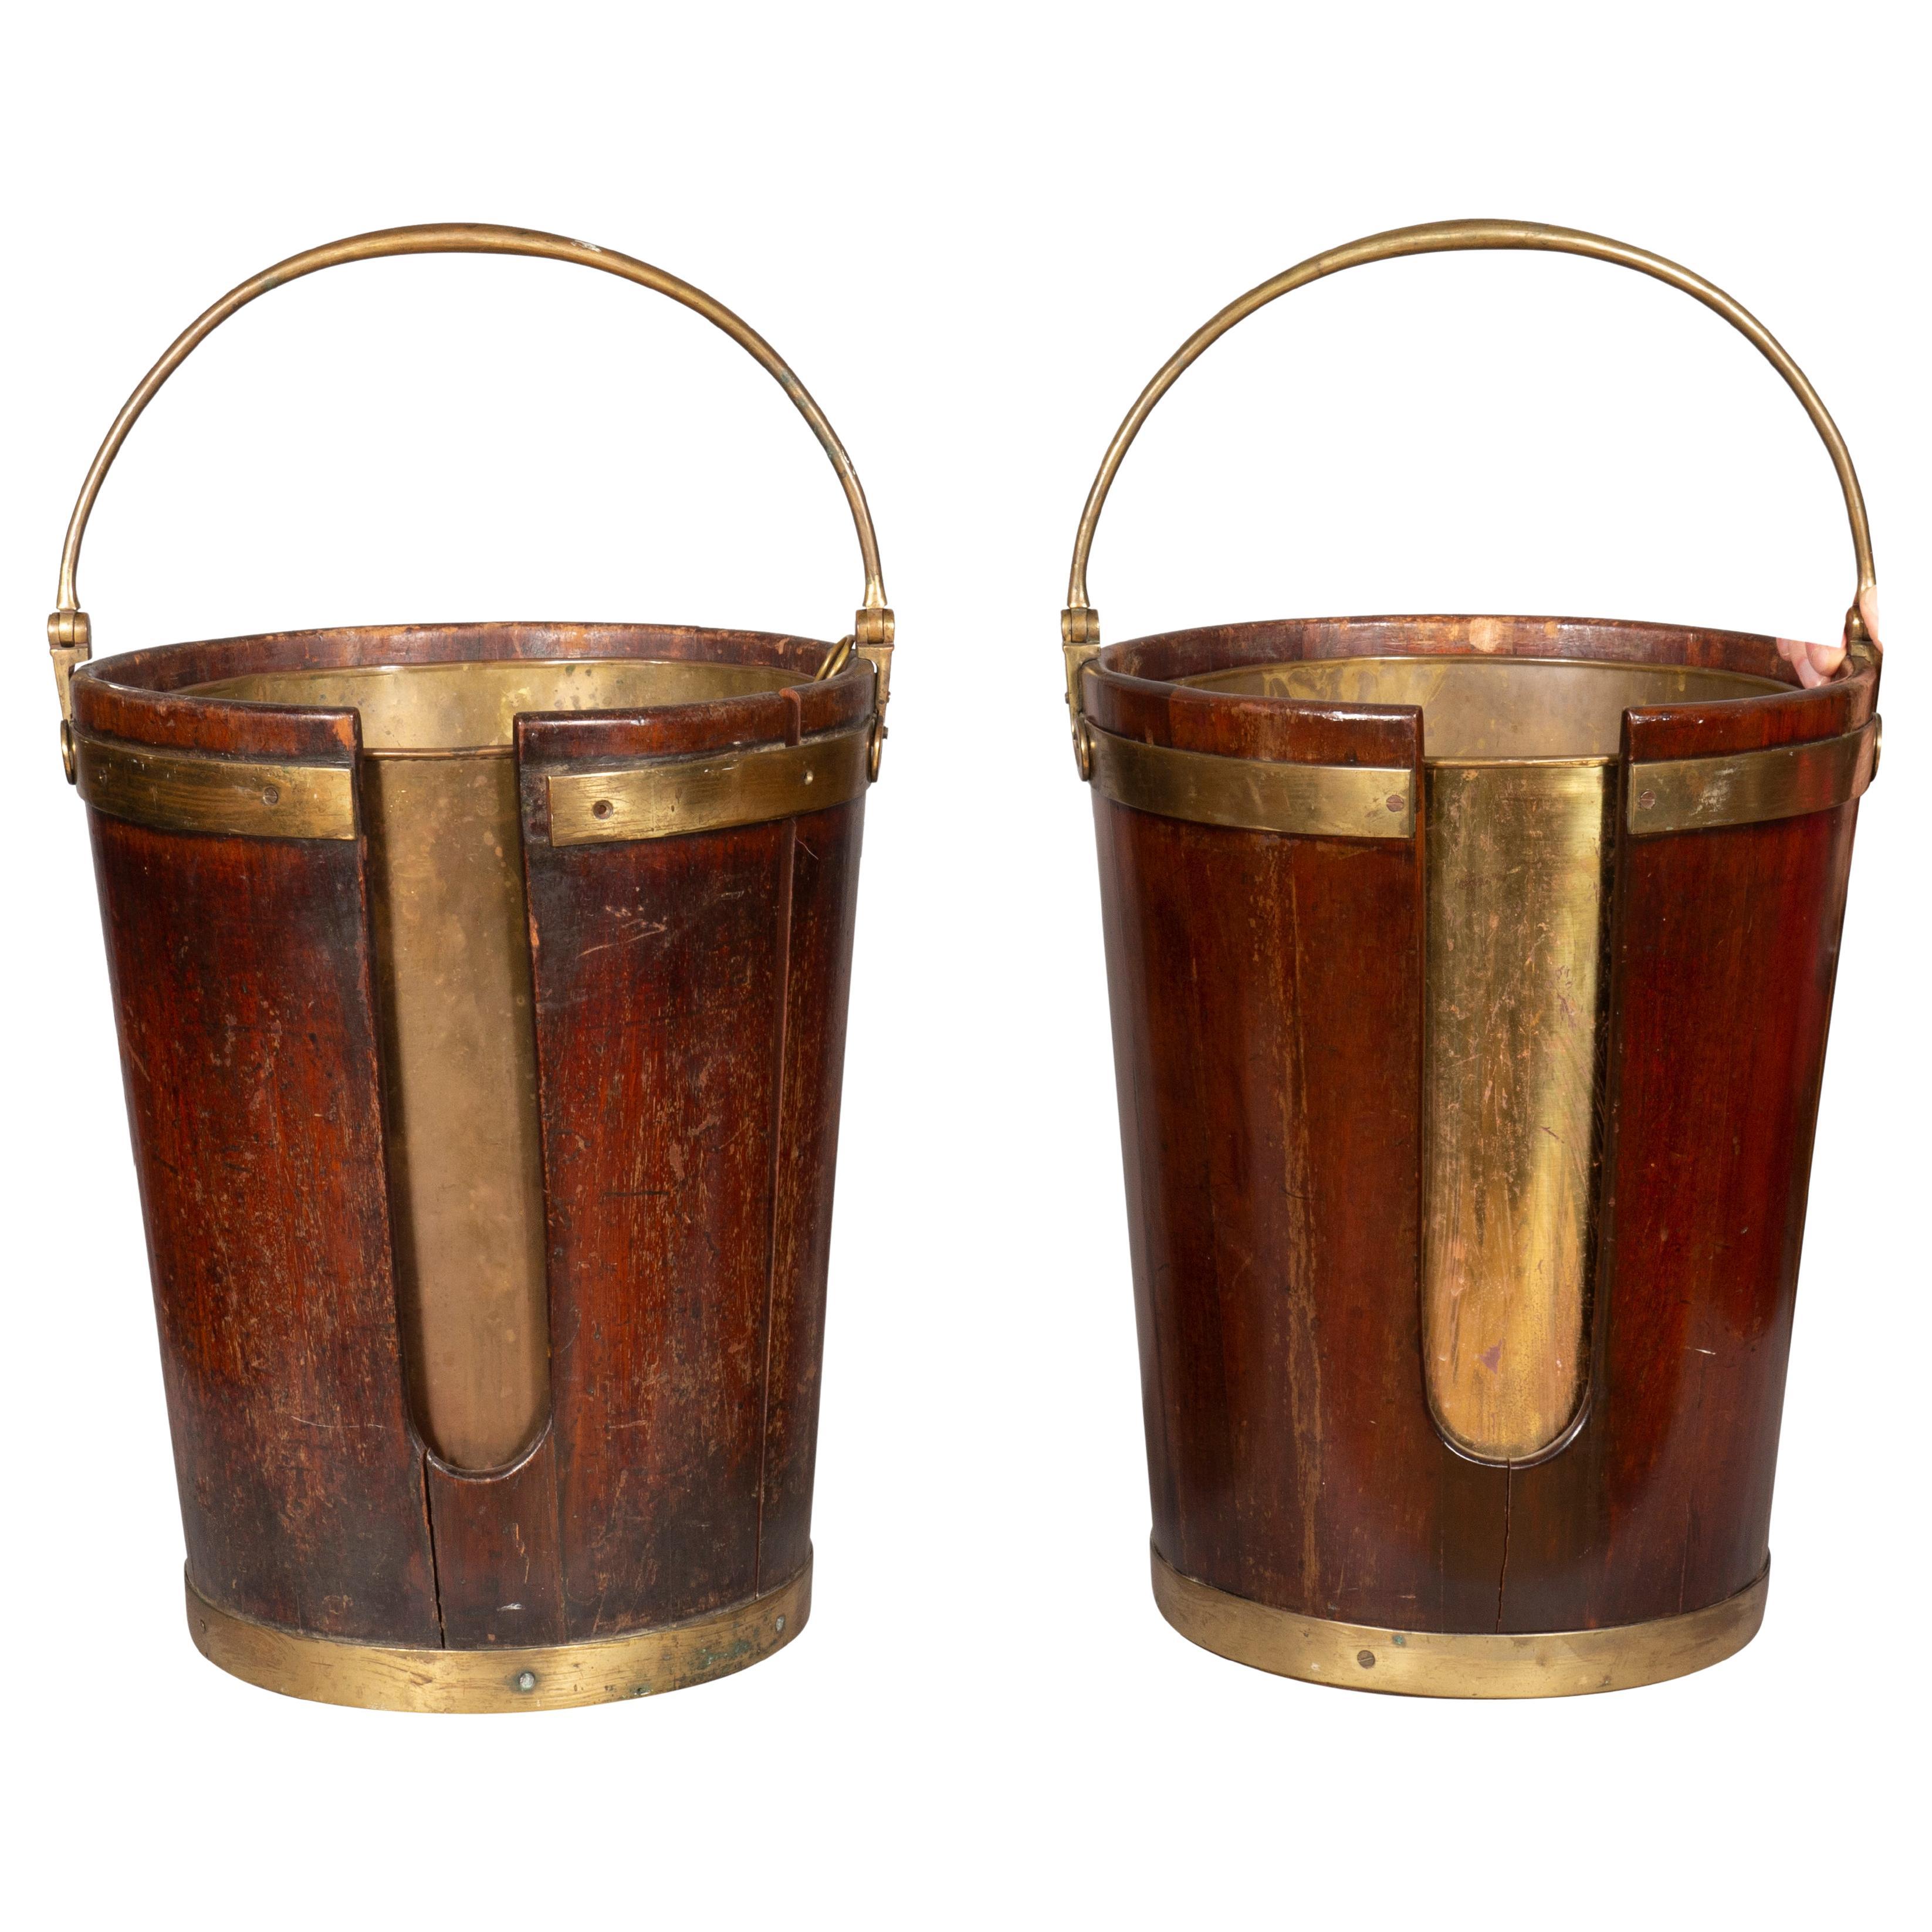 Paar Mahagoni-Teller-Eimer aus der Regency-Zeit